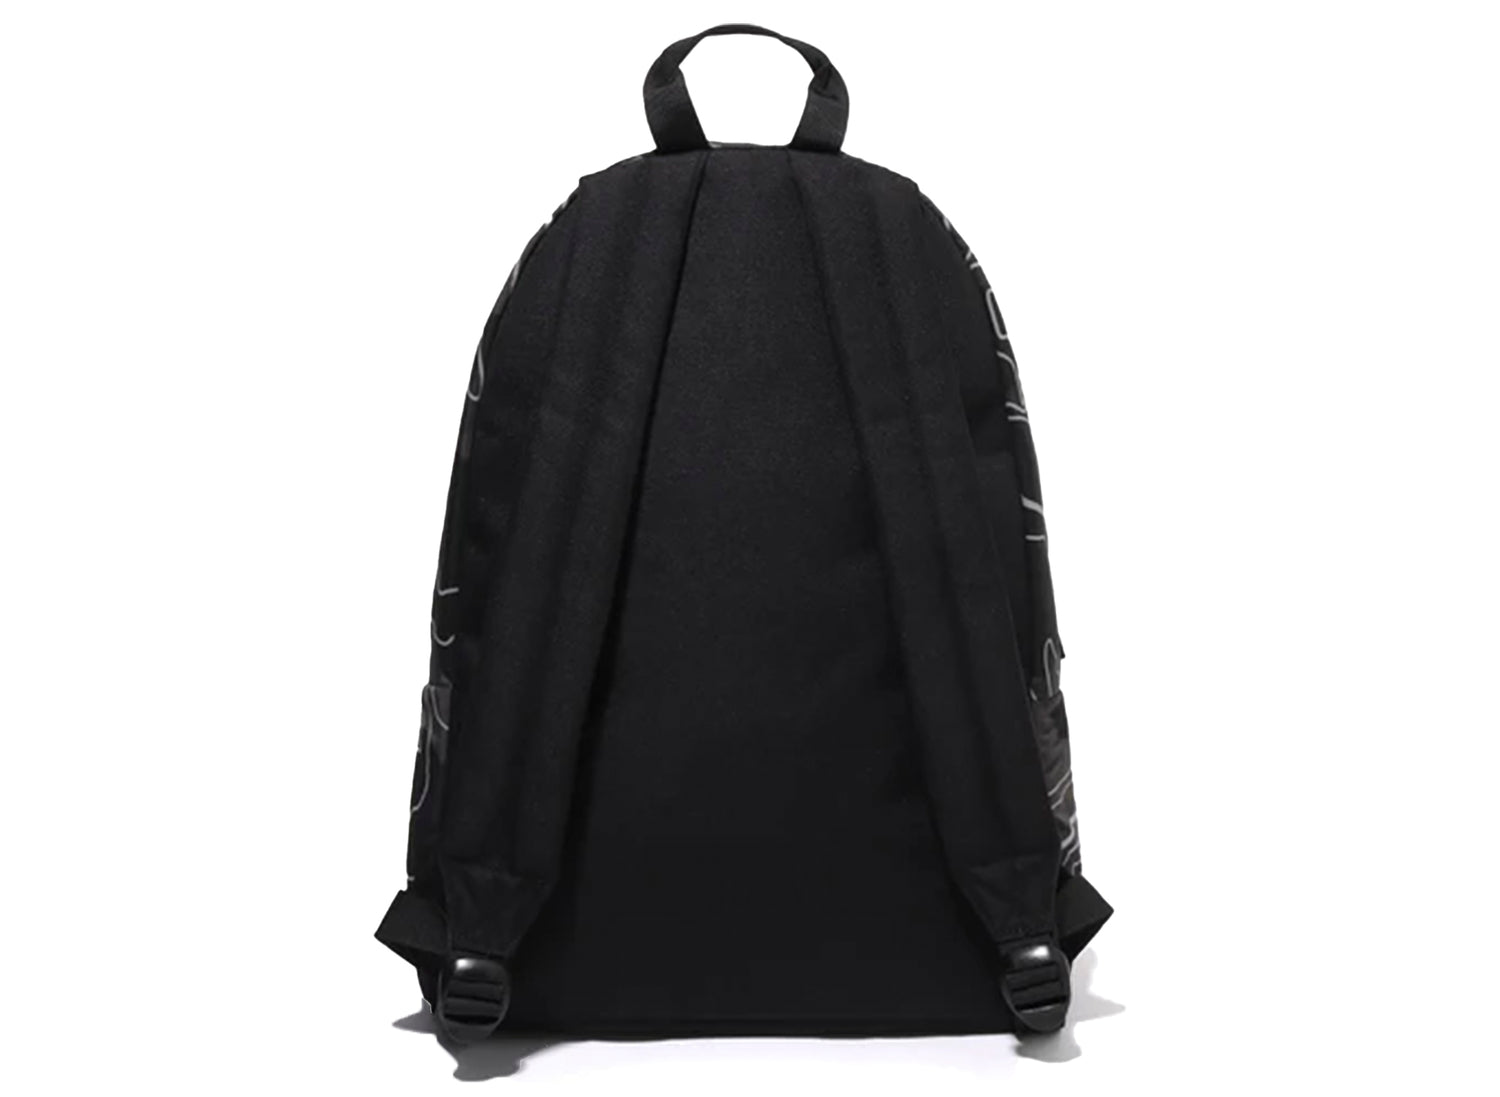 BAPE: Black Layered Line Camo Shark Backpack